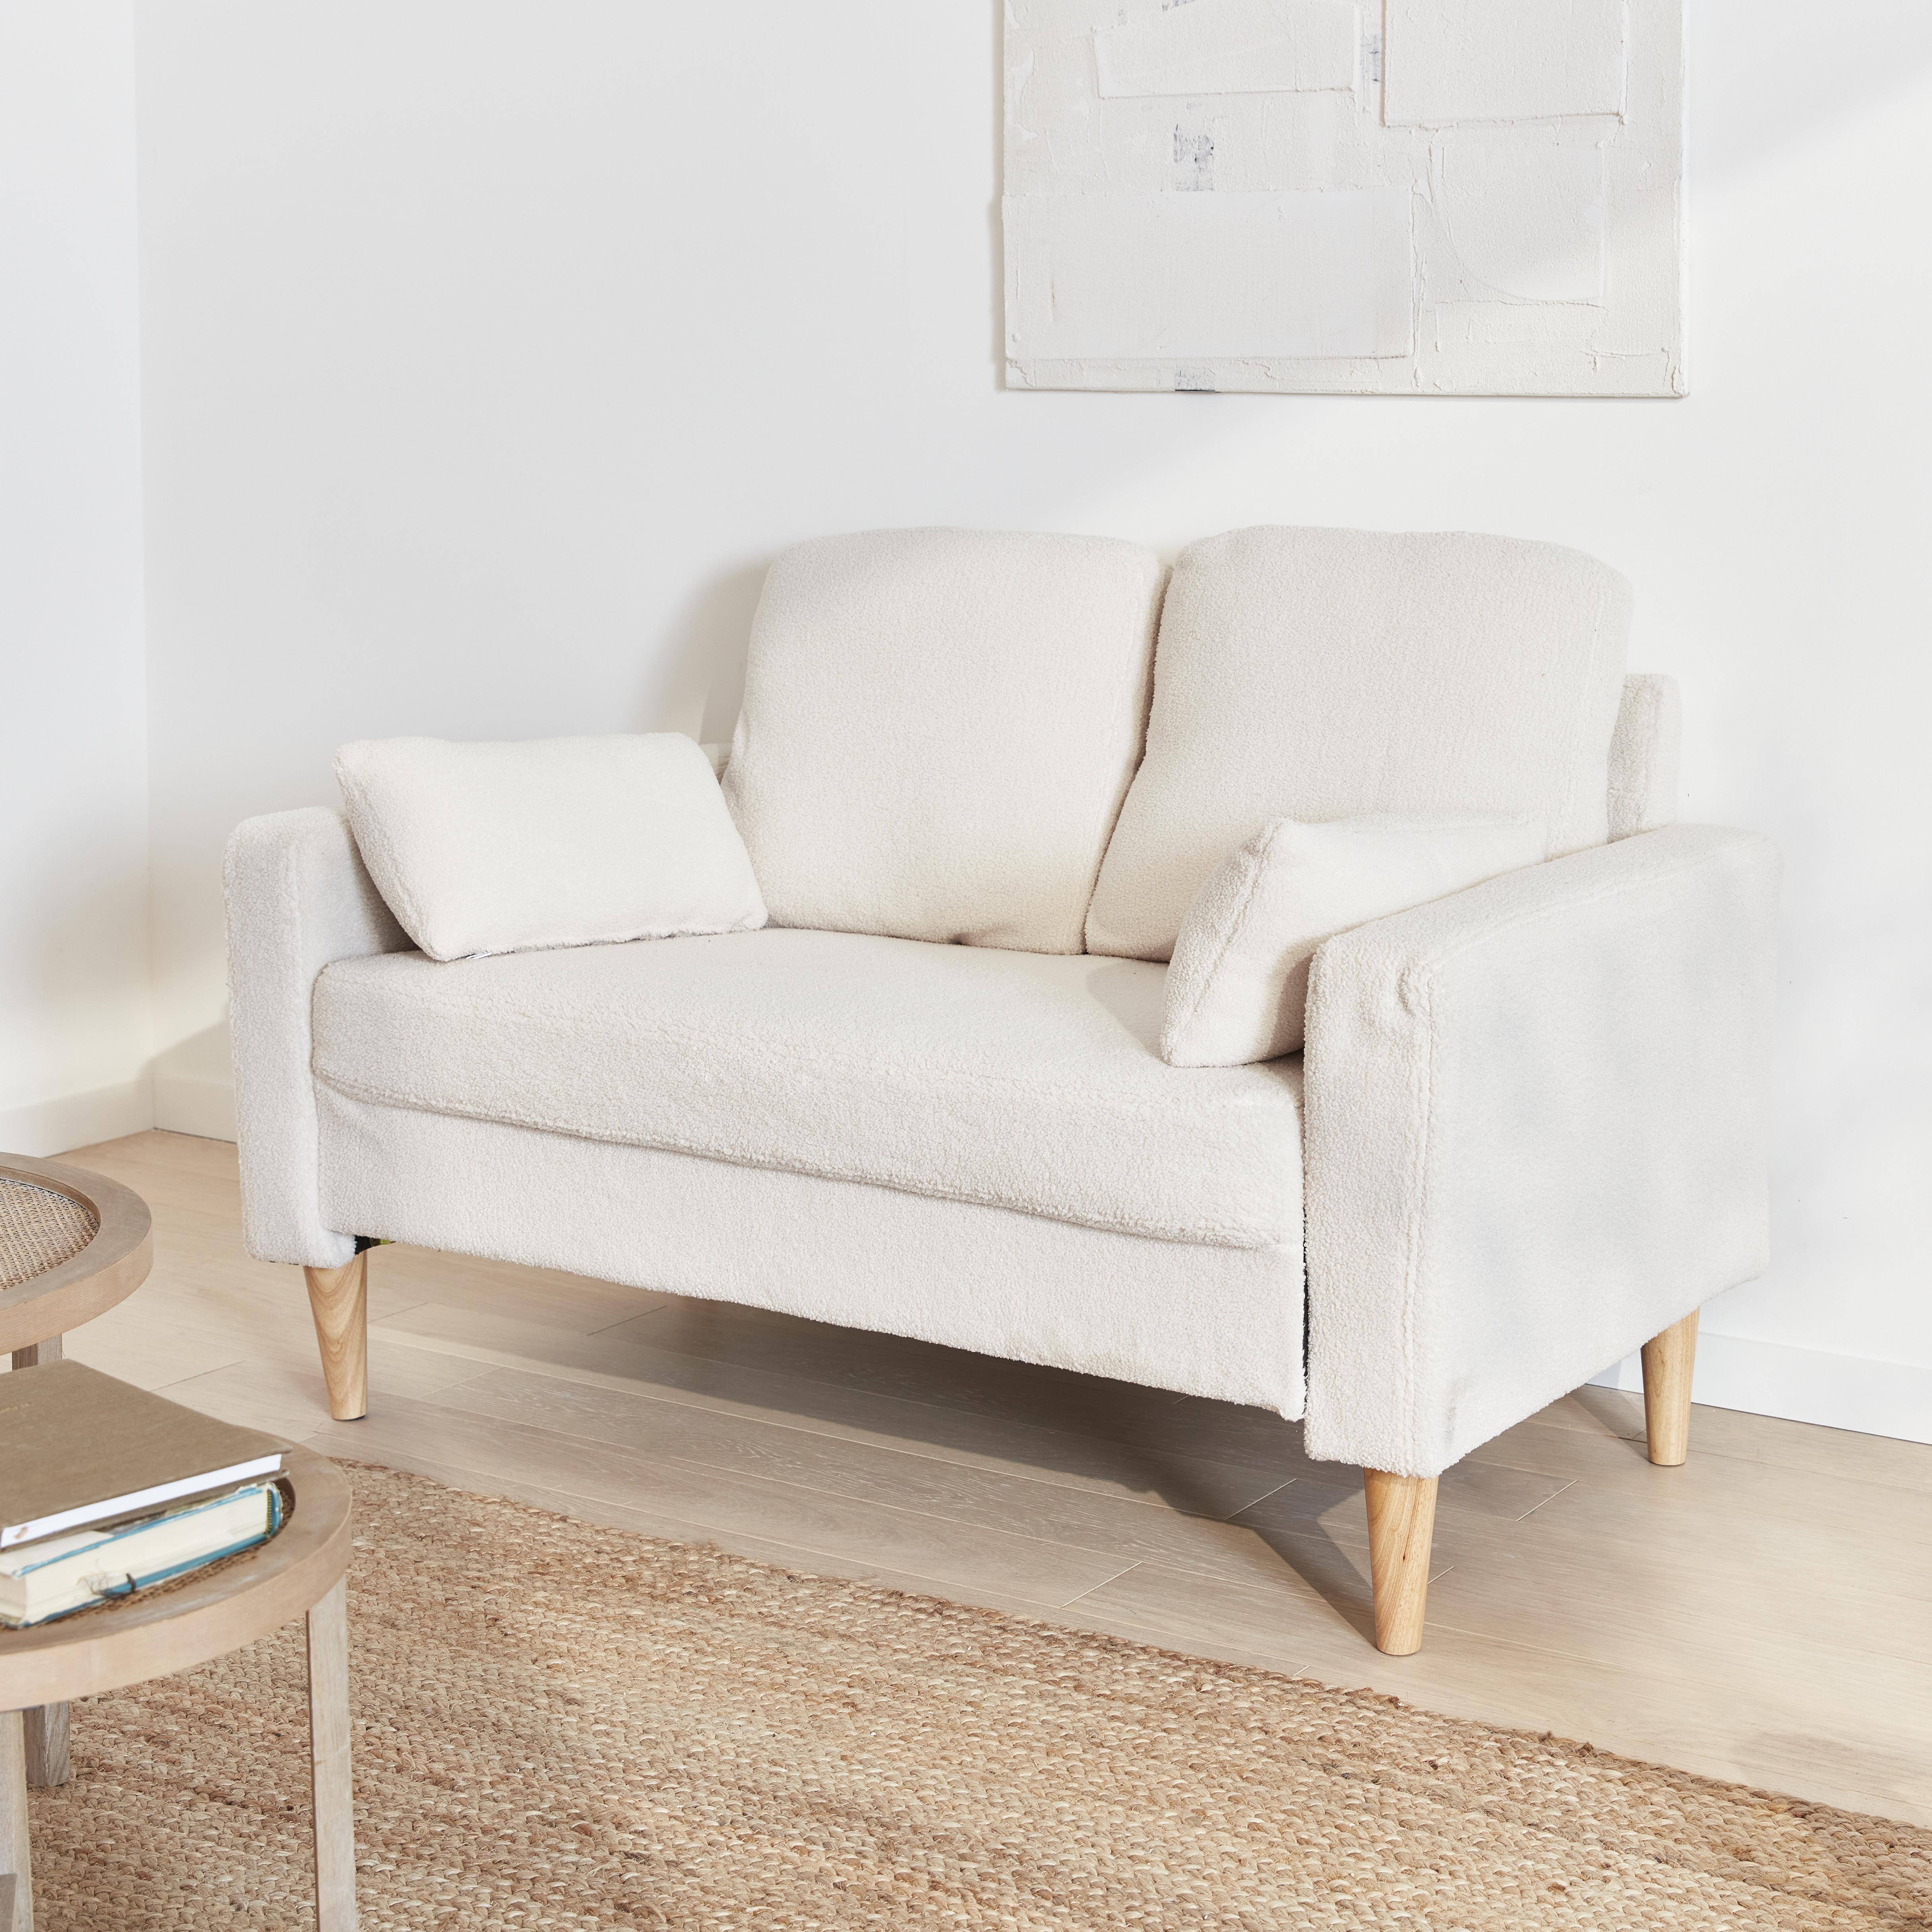 Sofá com caracóis brancos - Bjorn - sofá reto de 2 lugares com pernas de madeira, estilo escandinavo,sweeek,Photo2